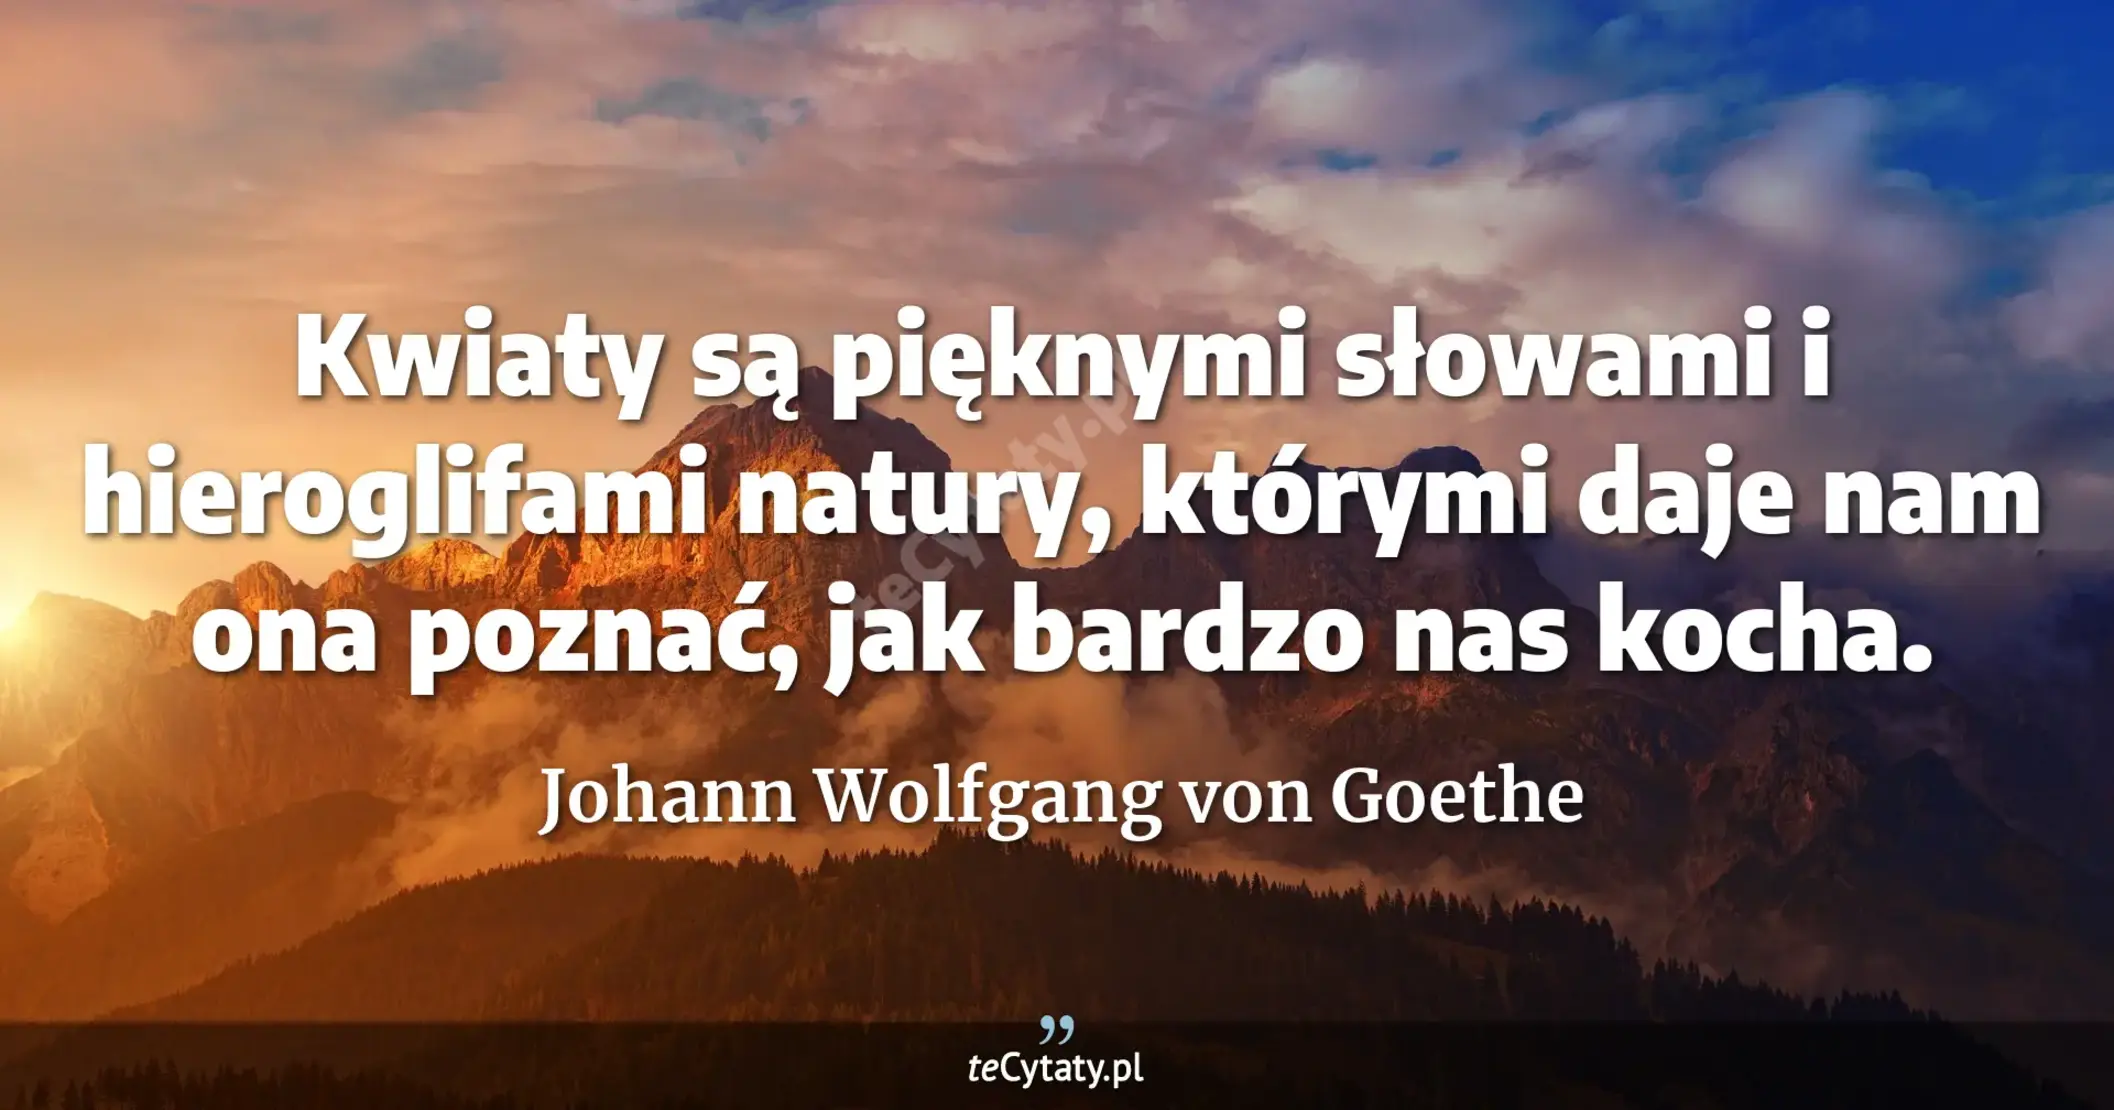 Kwiaty są pięknymi słowami i hieroglifami natury, którymi daje nam ona poznać, jak bardzo nas kocha. - Johann Wolfgang von Goethe